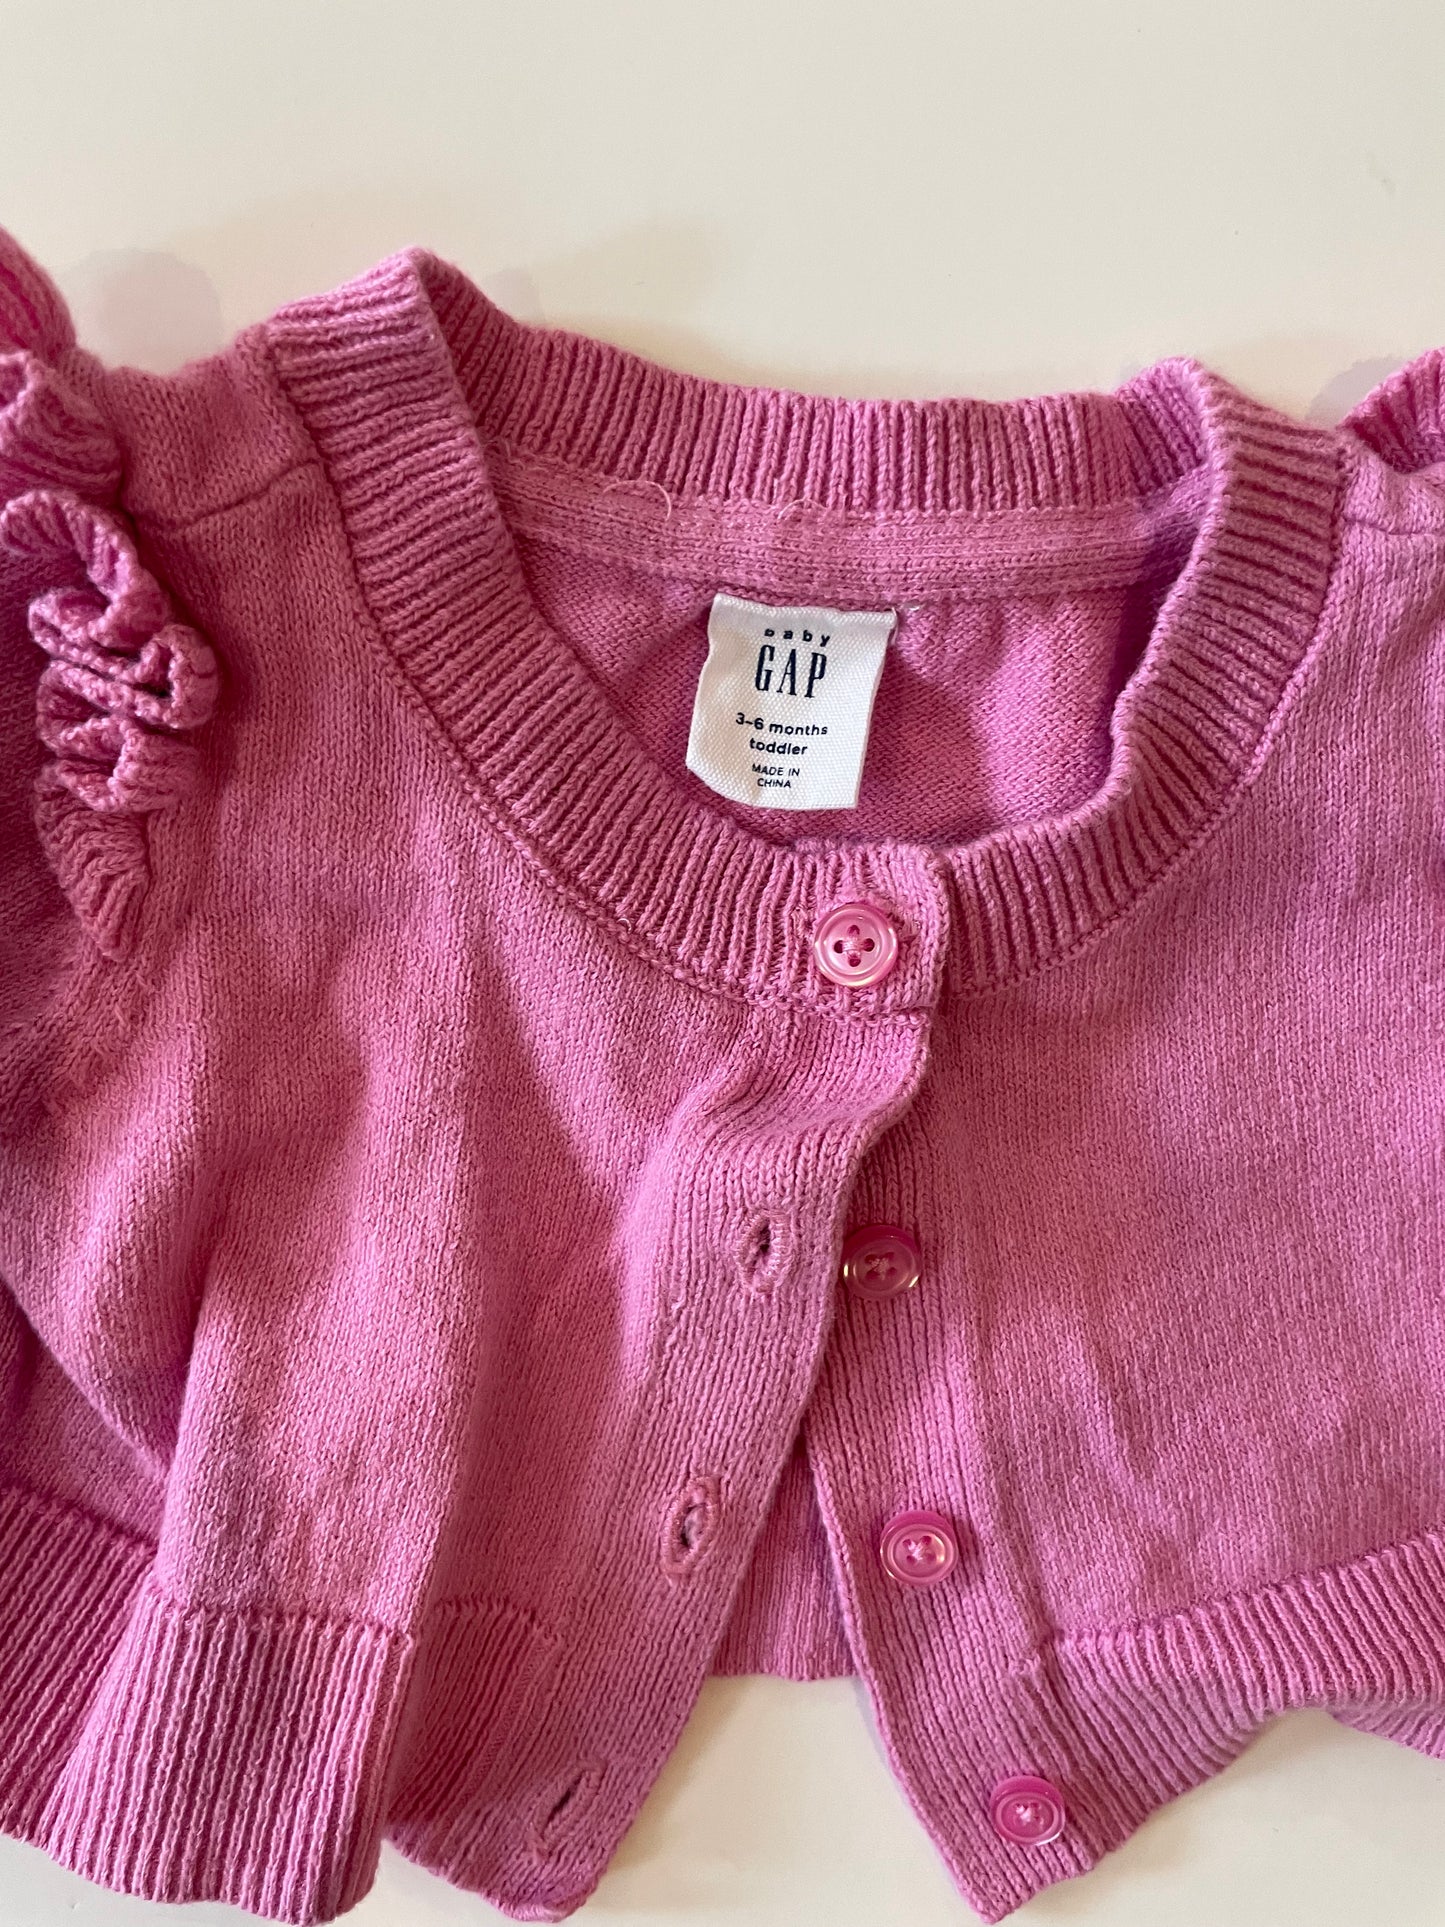 GAPshort pink cardigan size 6 months